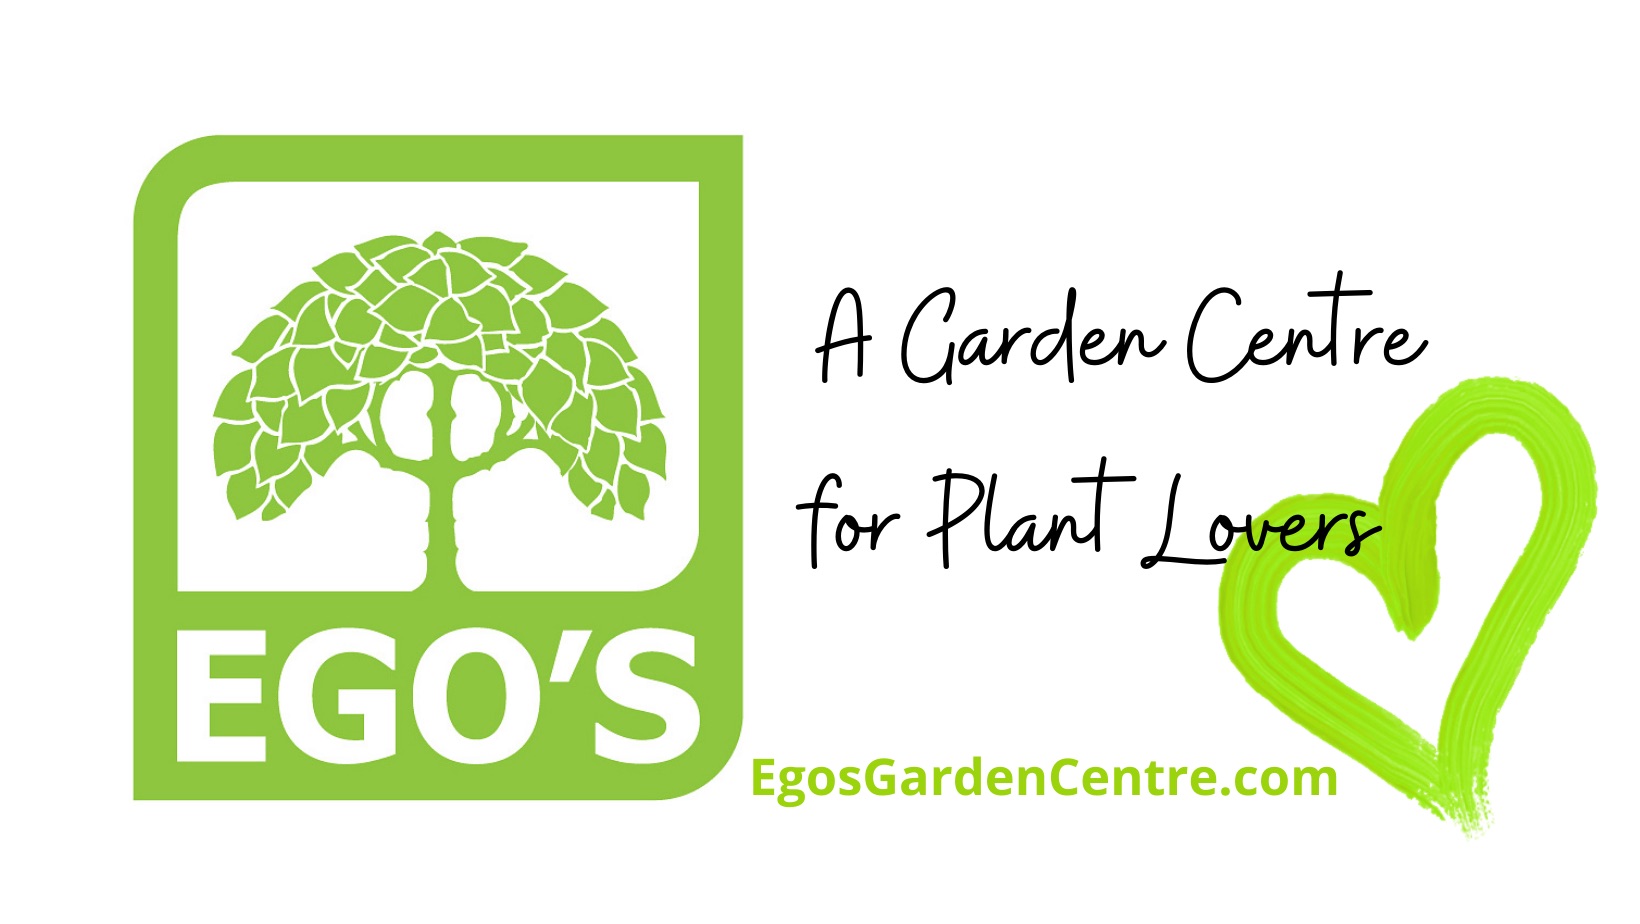 Ego's Garden Centre